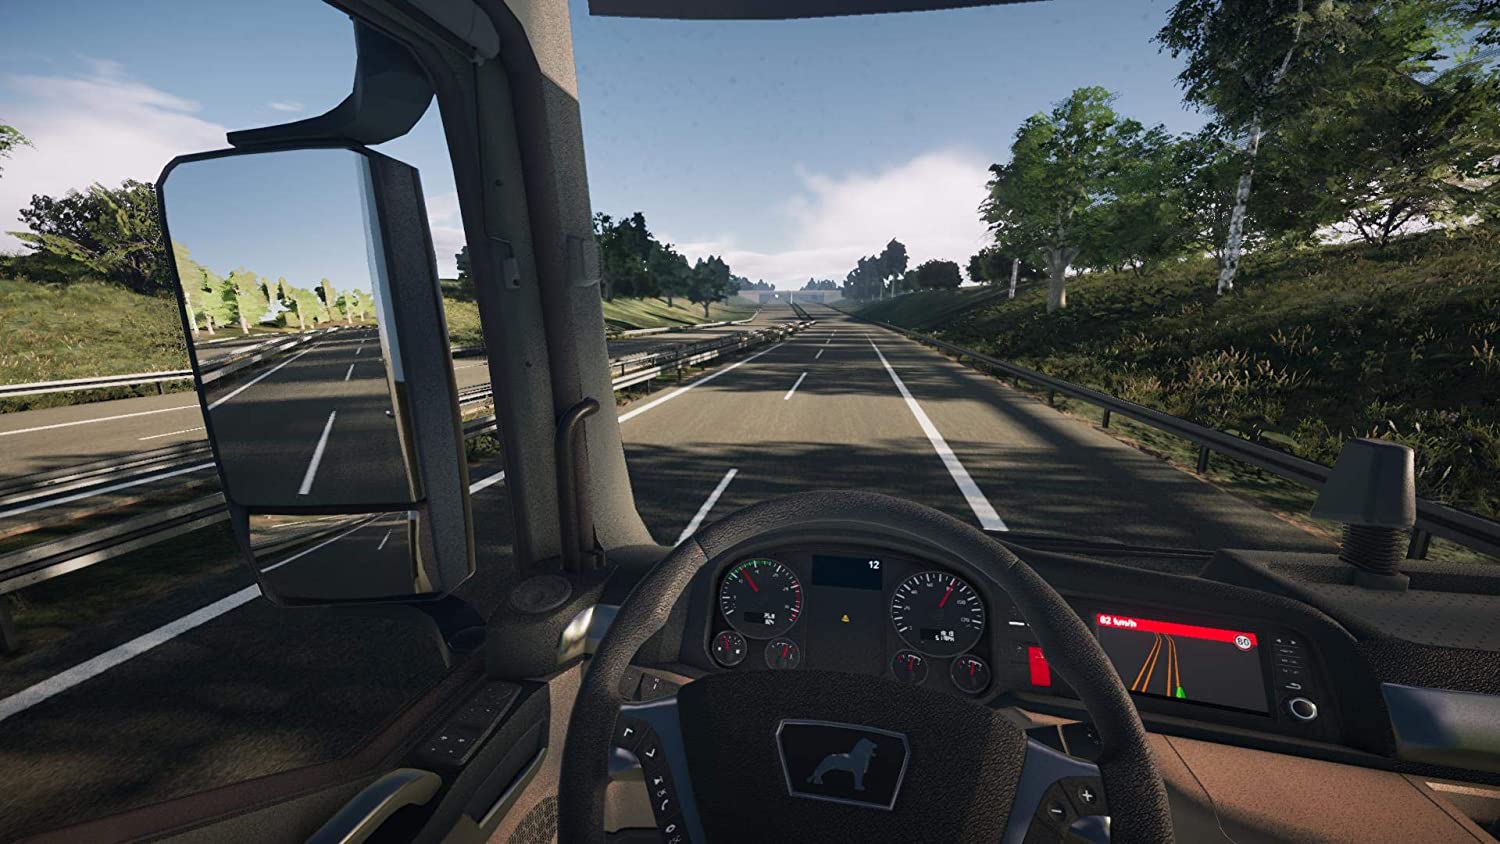 Игра симулятор икс. On the Road – Truck Simulation игра. Truck Simulator ps4. On the Road Truck Simulator для PLAYSTATION 4. Евро трак симулятор на ПС 4.